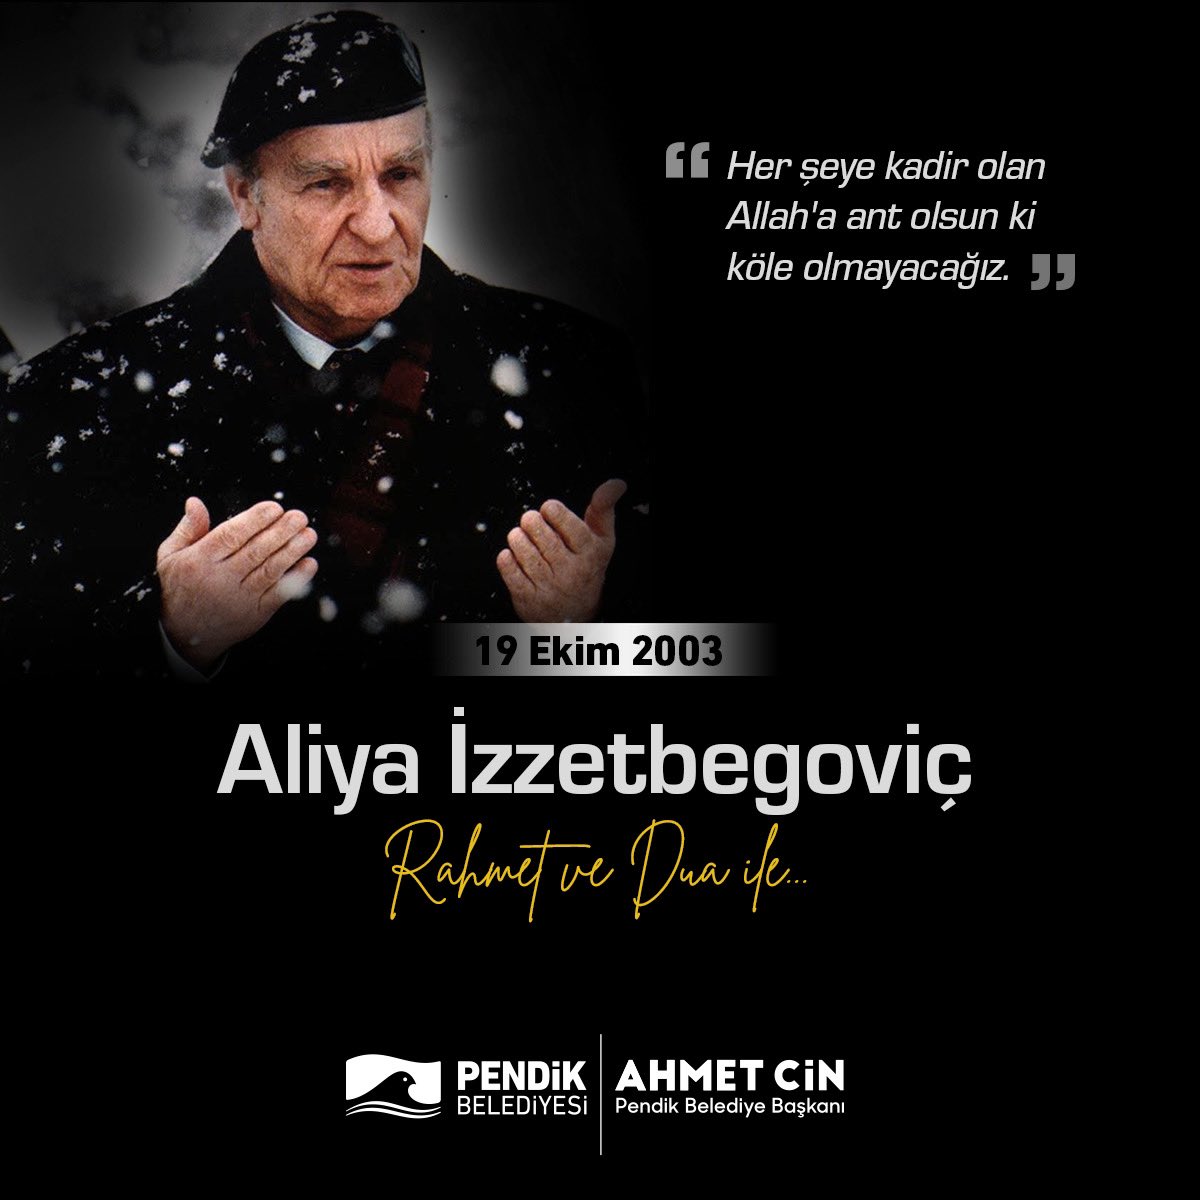 Bosna Hersek'in ilk Cumhurbaşkanı, Bilge Kral Aliya İzzetbegoviç’i vefatının 19. yıl dönümünde rahmet ve dua ile yad ediyorum.